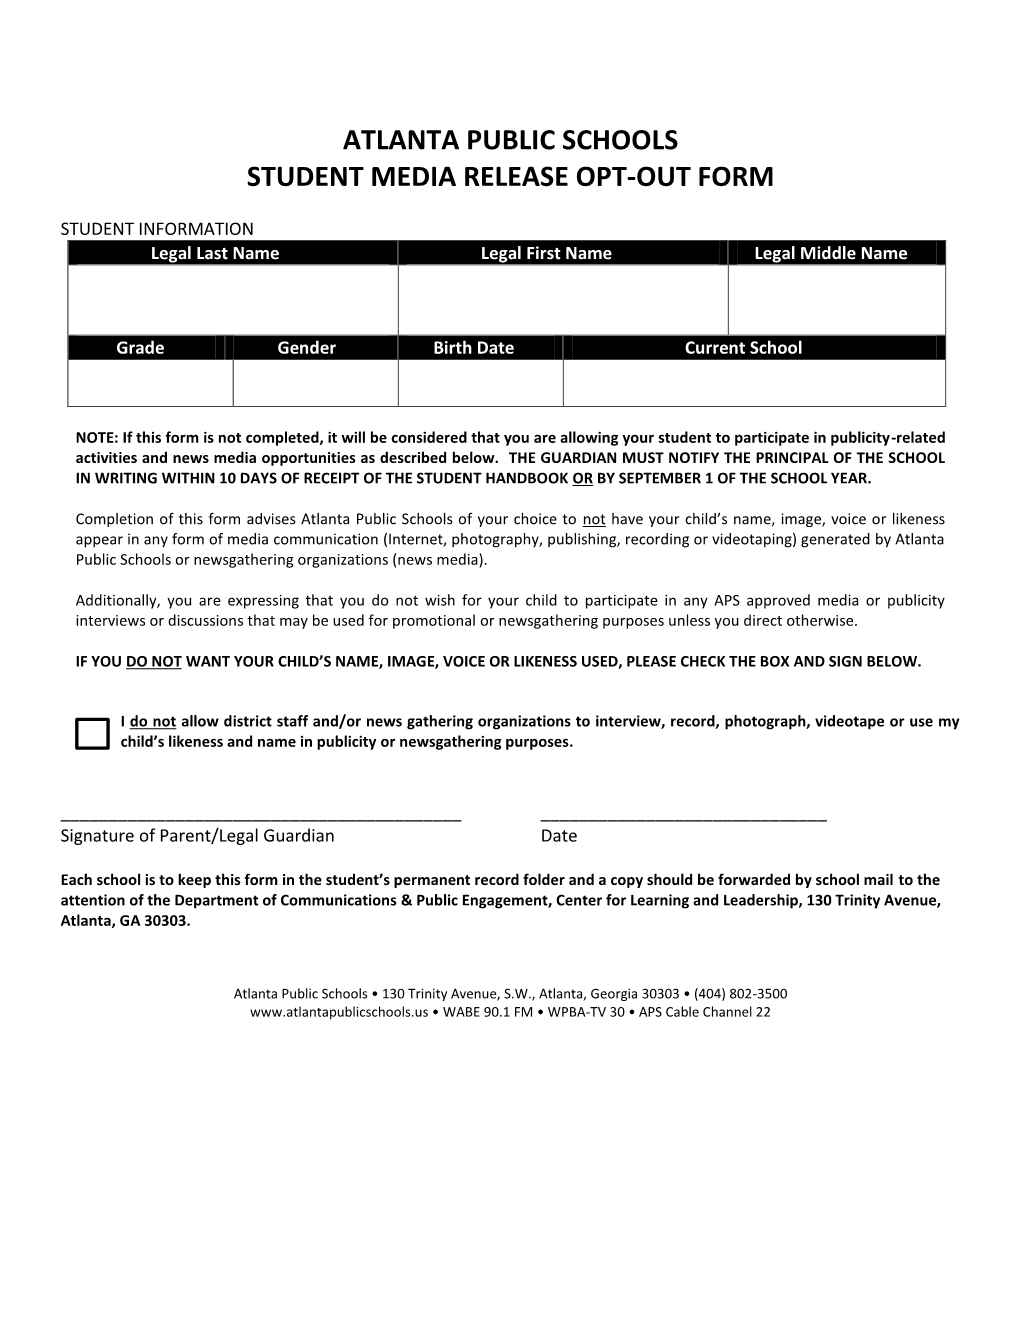 Atlanta Public Schools Student Media Release Opt-Out Form